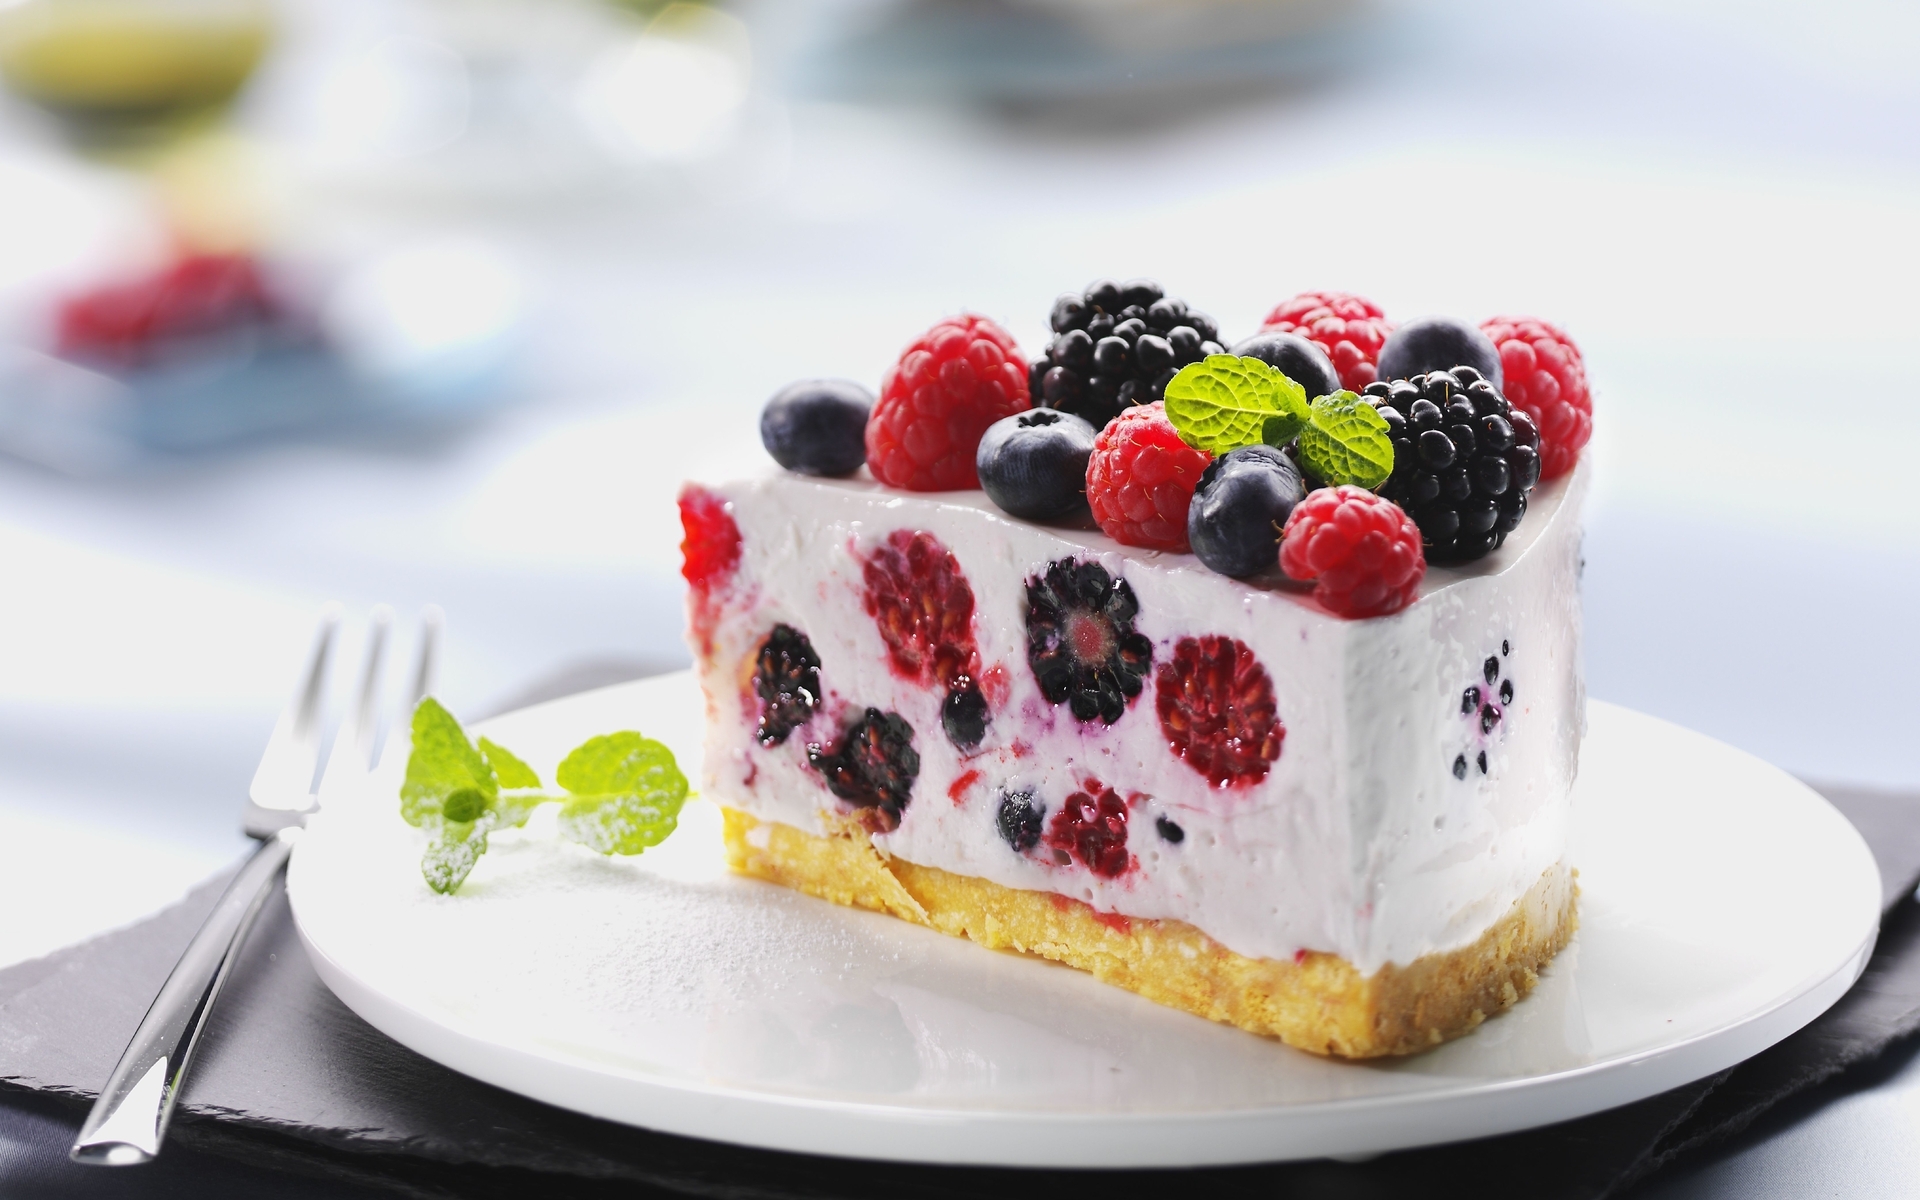 Картинка: Торт, ягоды, малина, ежевика, черника, кусочек, листики, вилка, тарелка